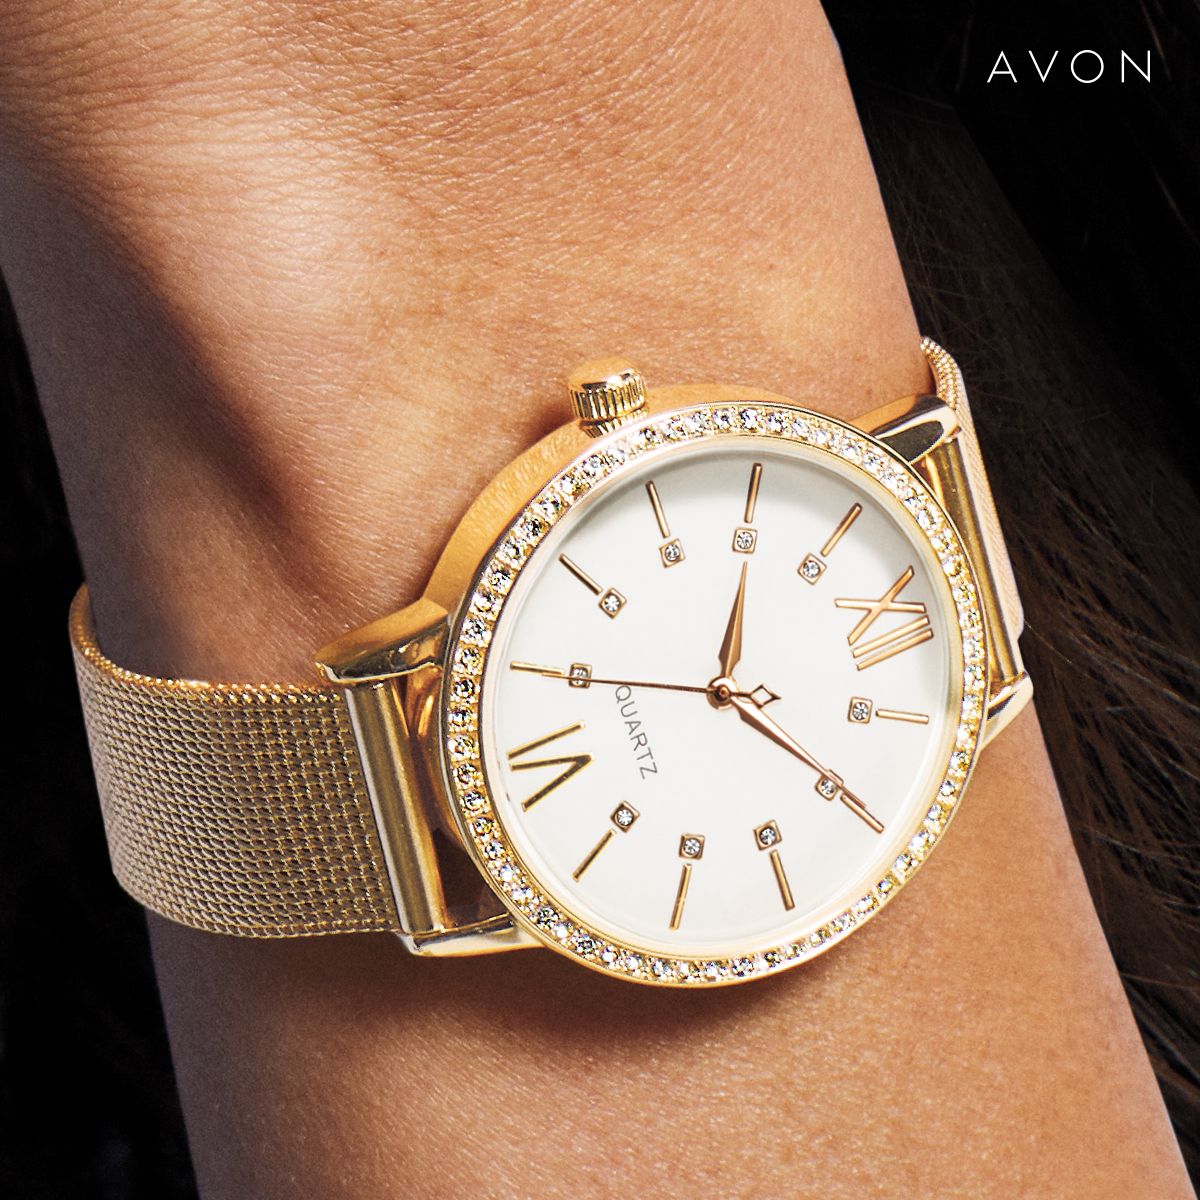 Avon Watches